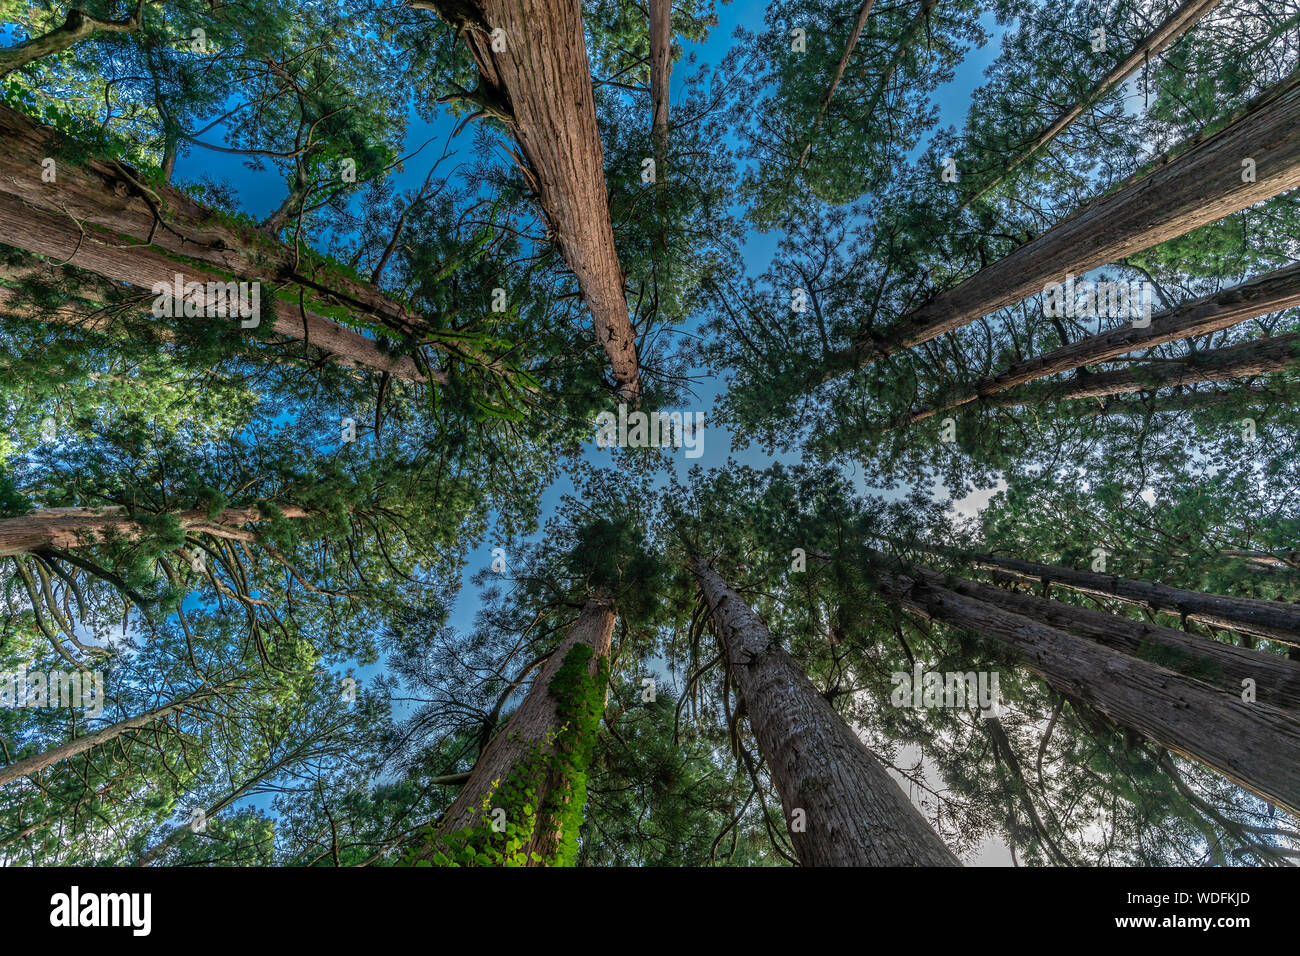 Sugi alberi (Cryptomeria japonica) o cedro giapponese foresta a monte Haguro, uno dei tre monti sacri di Dewa provincia (Dewa Sanzan). Trova Foto Stock